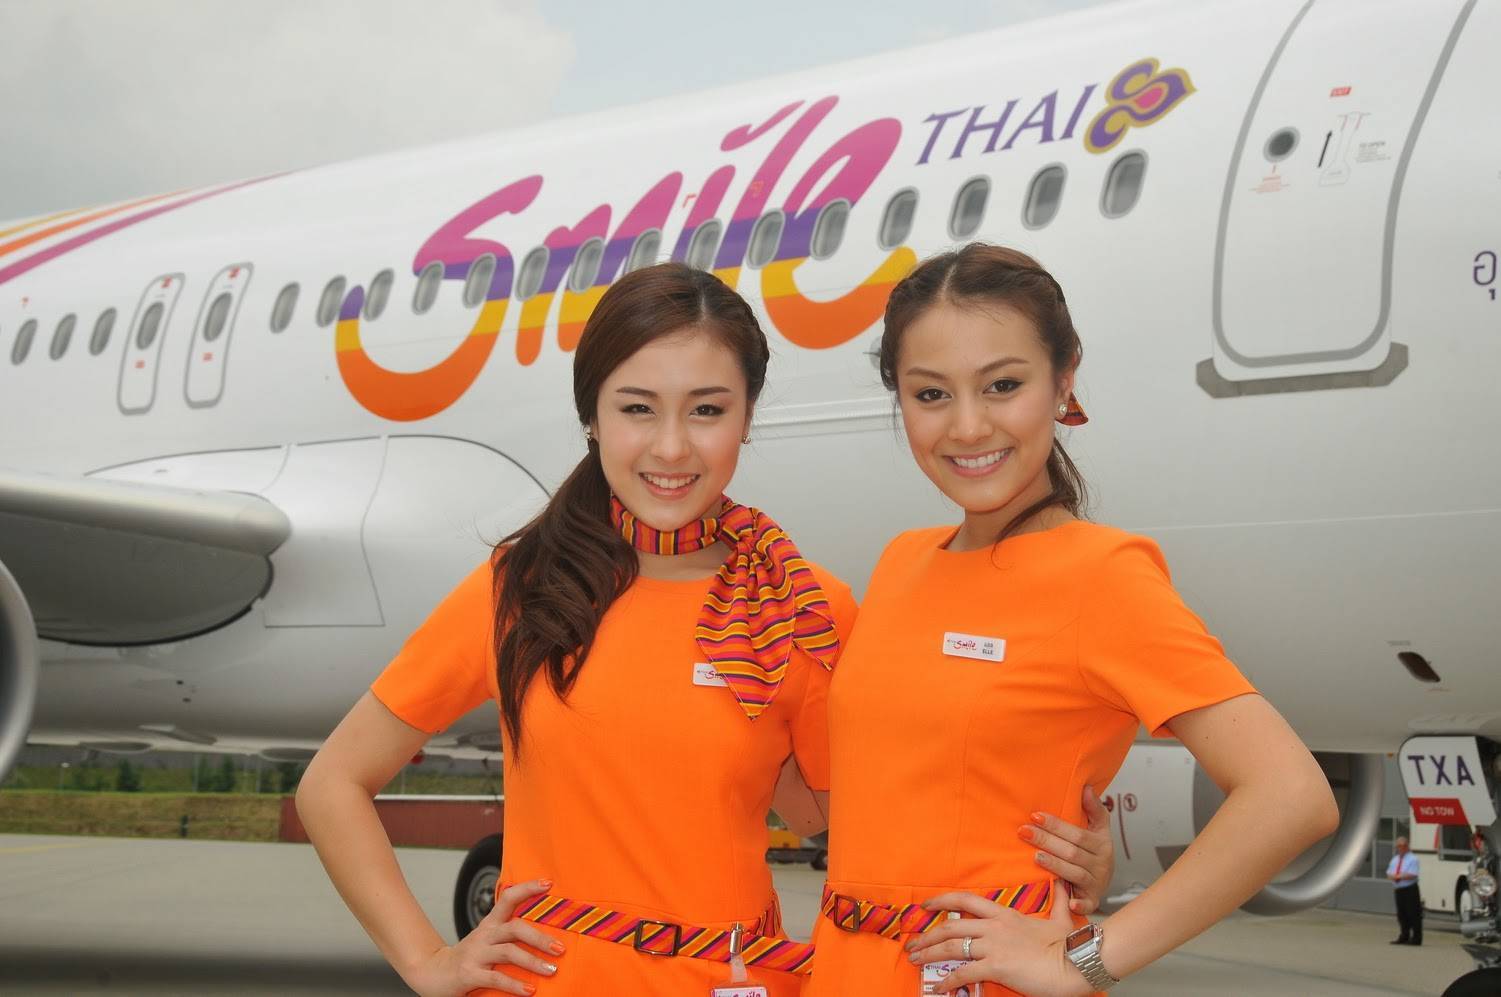 Как дешево слетать в таиланд — поиск и покупка выгодных билетов